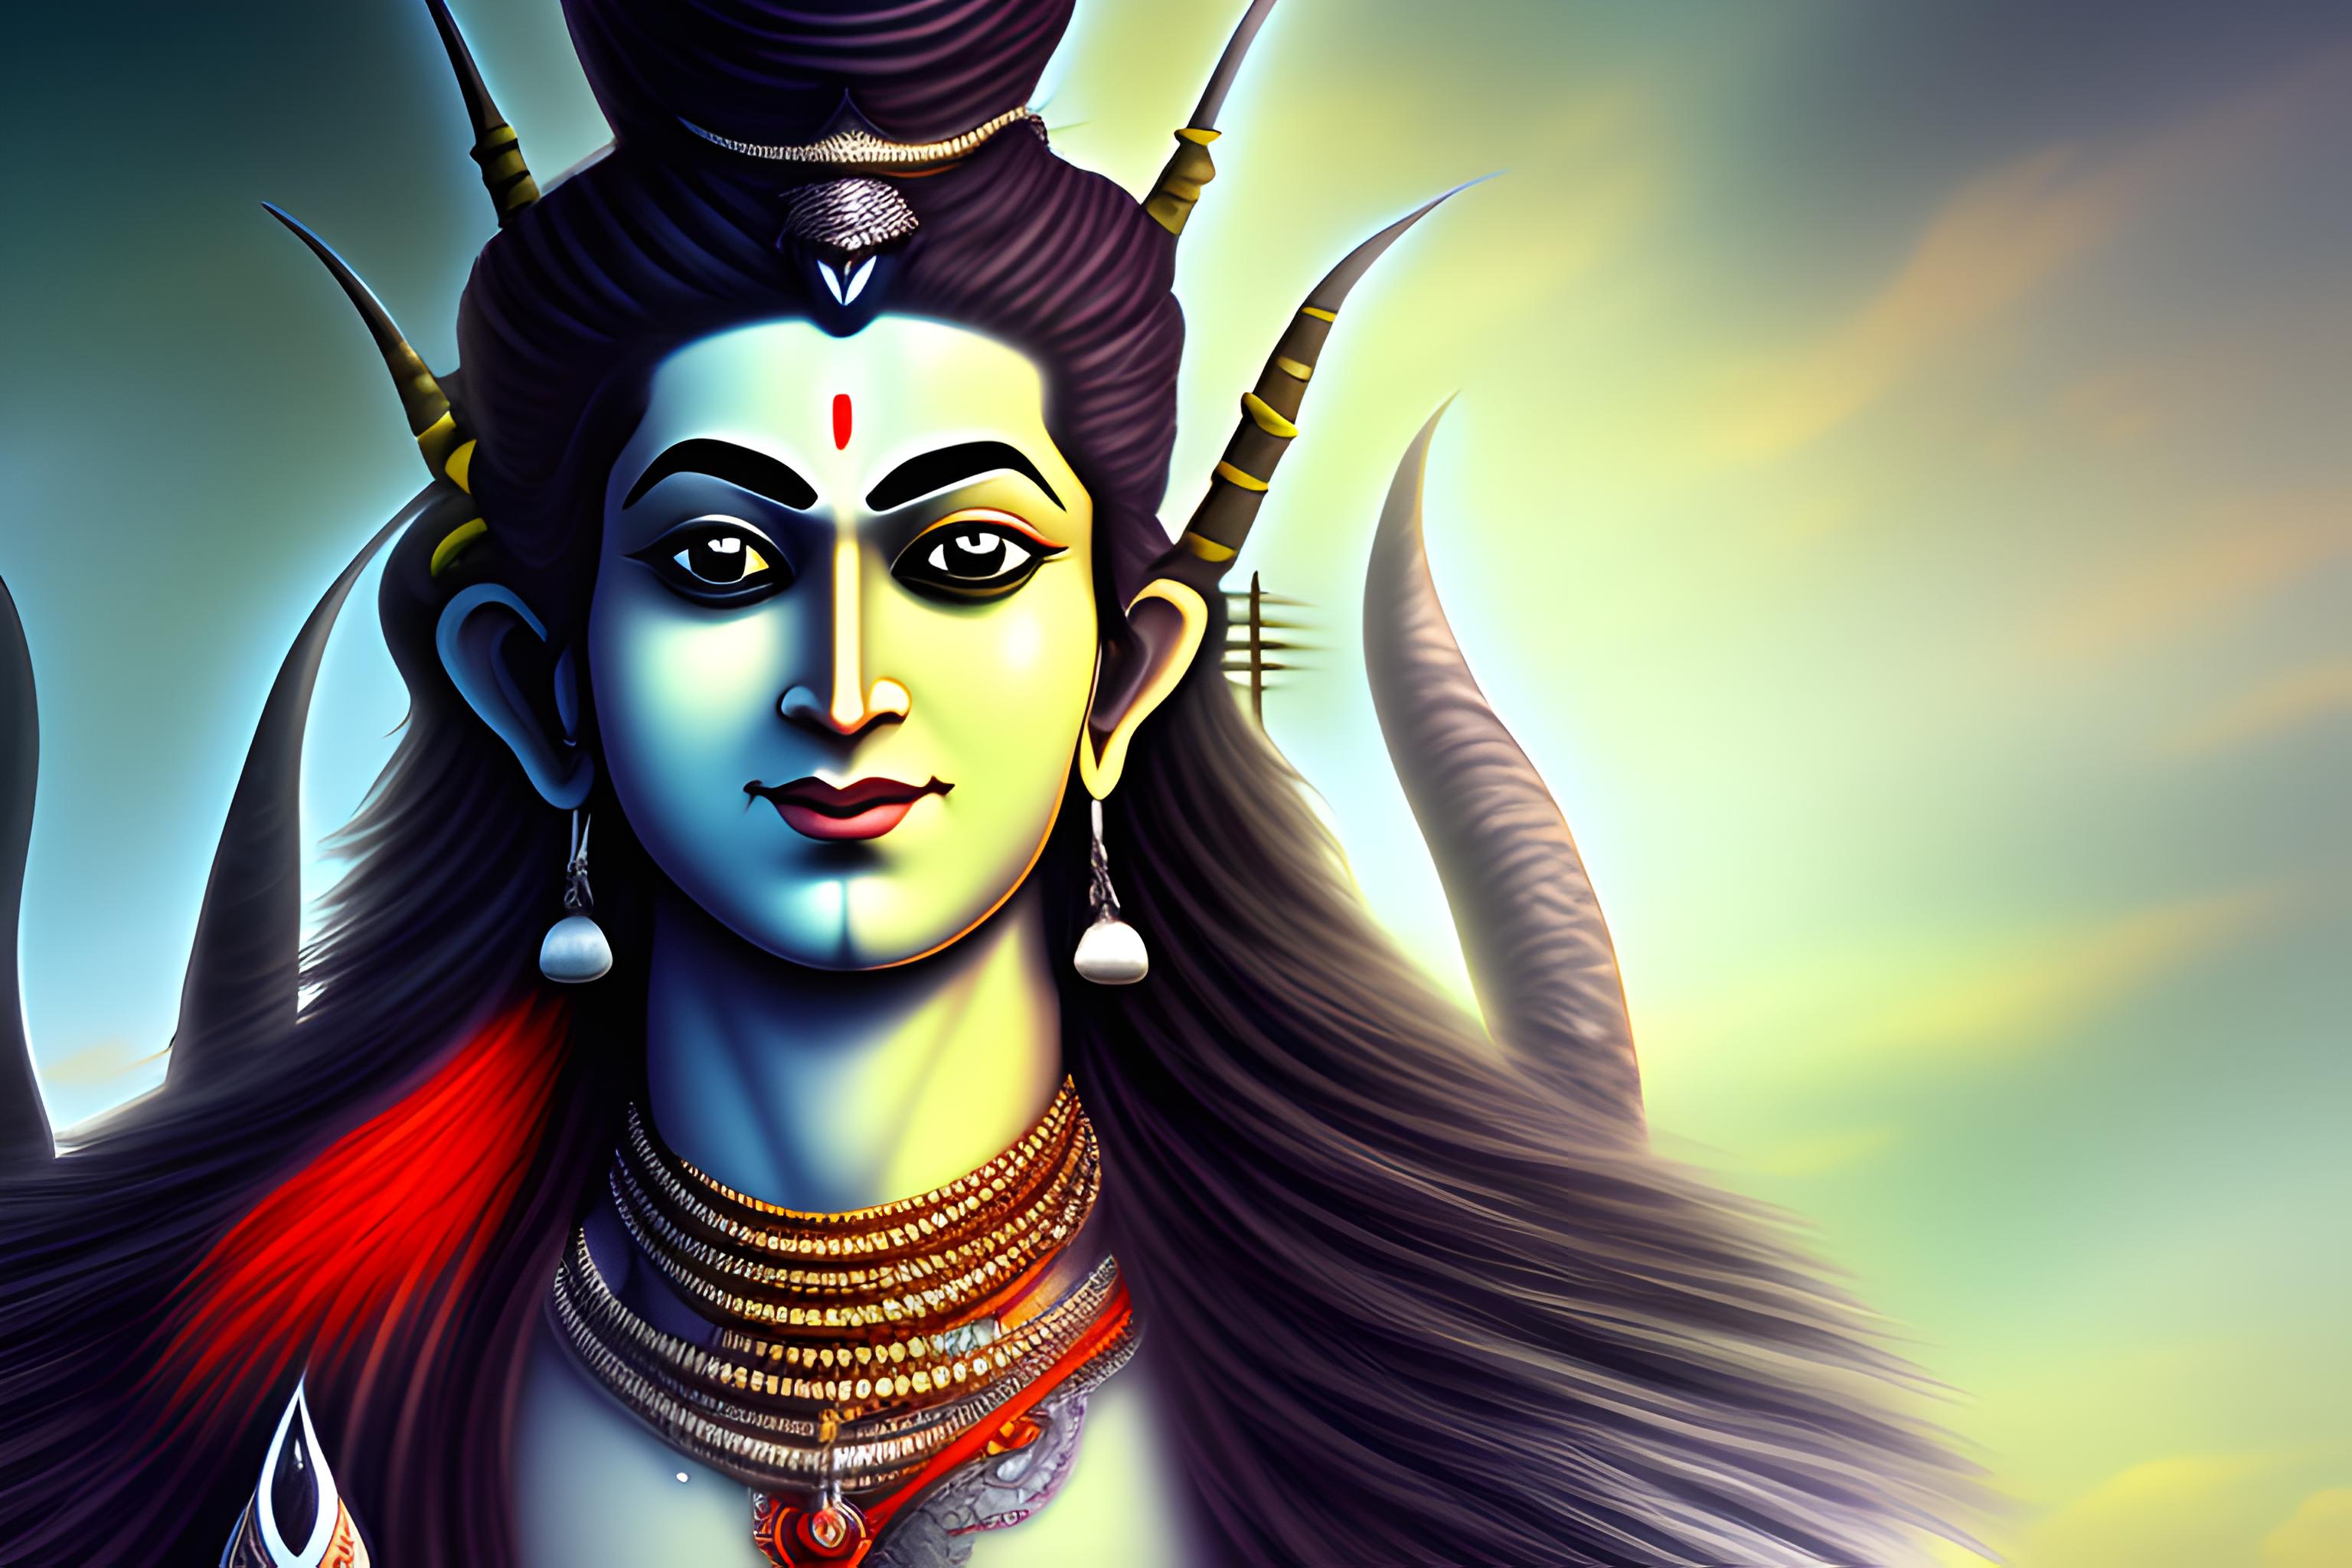 HAR HAR MAHADEV | Shiva wallpaper, Lord shiva hd wallpaper, Lord vishnu  wallpapers